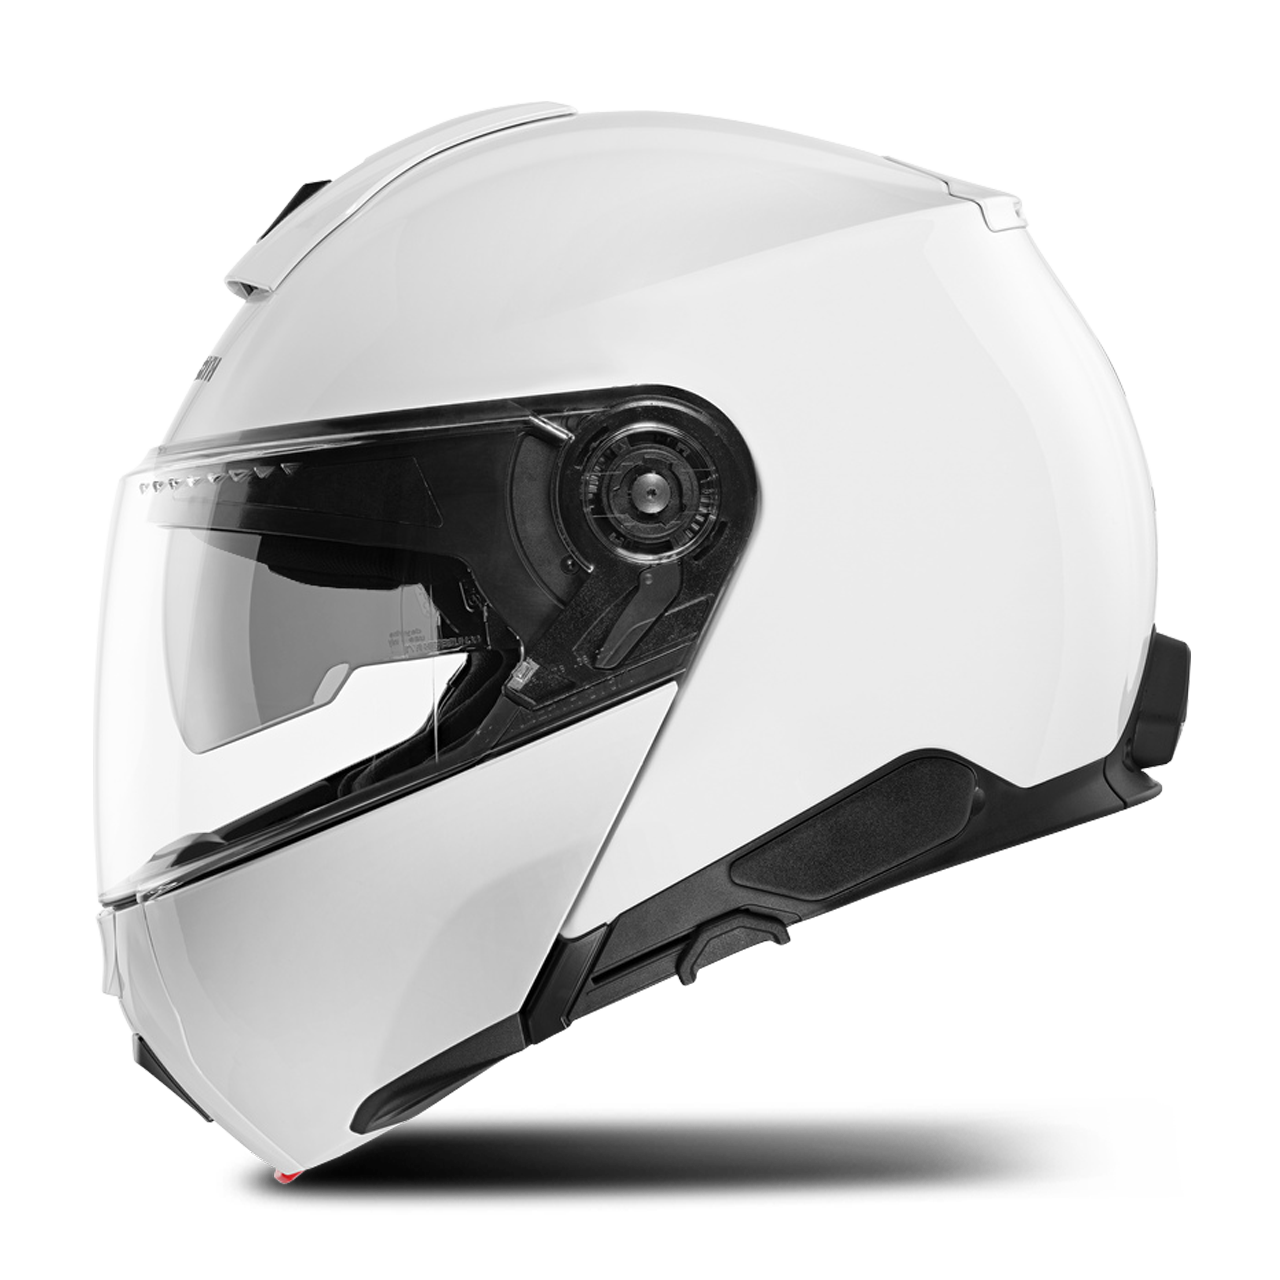 Schuberth Schuberth C5 Flip-Up Helmet low-cost